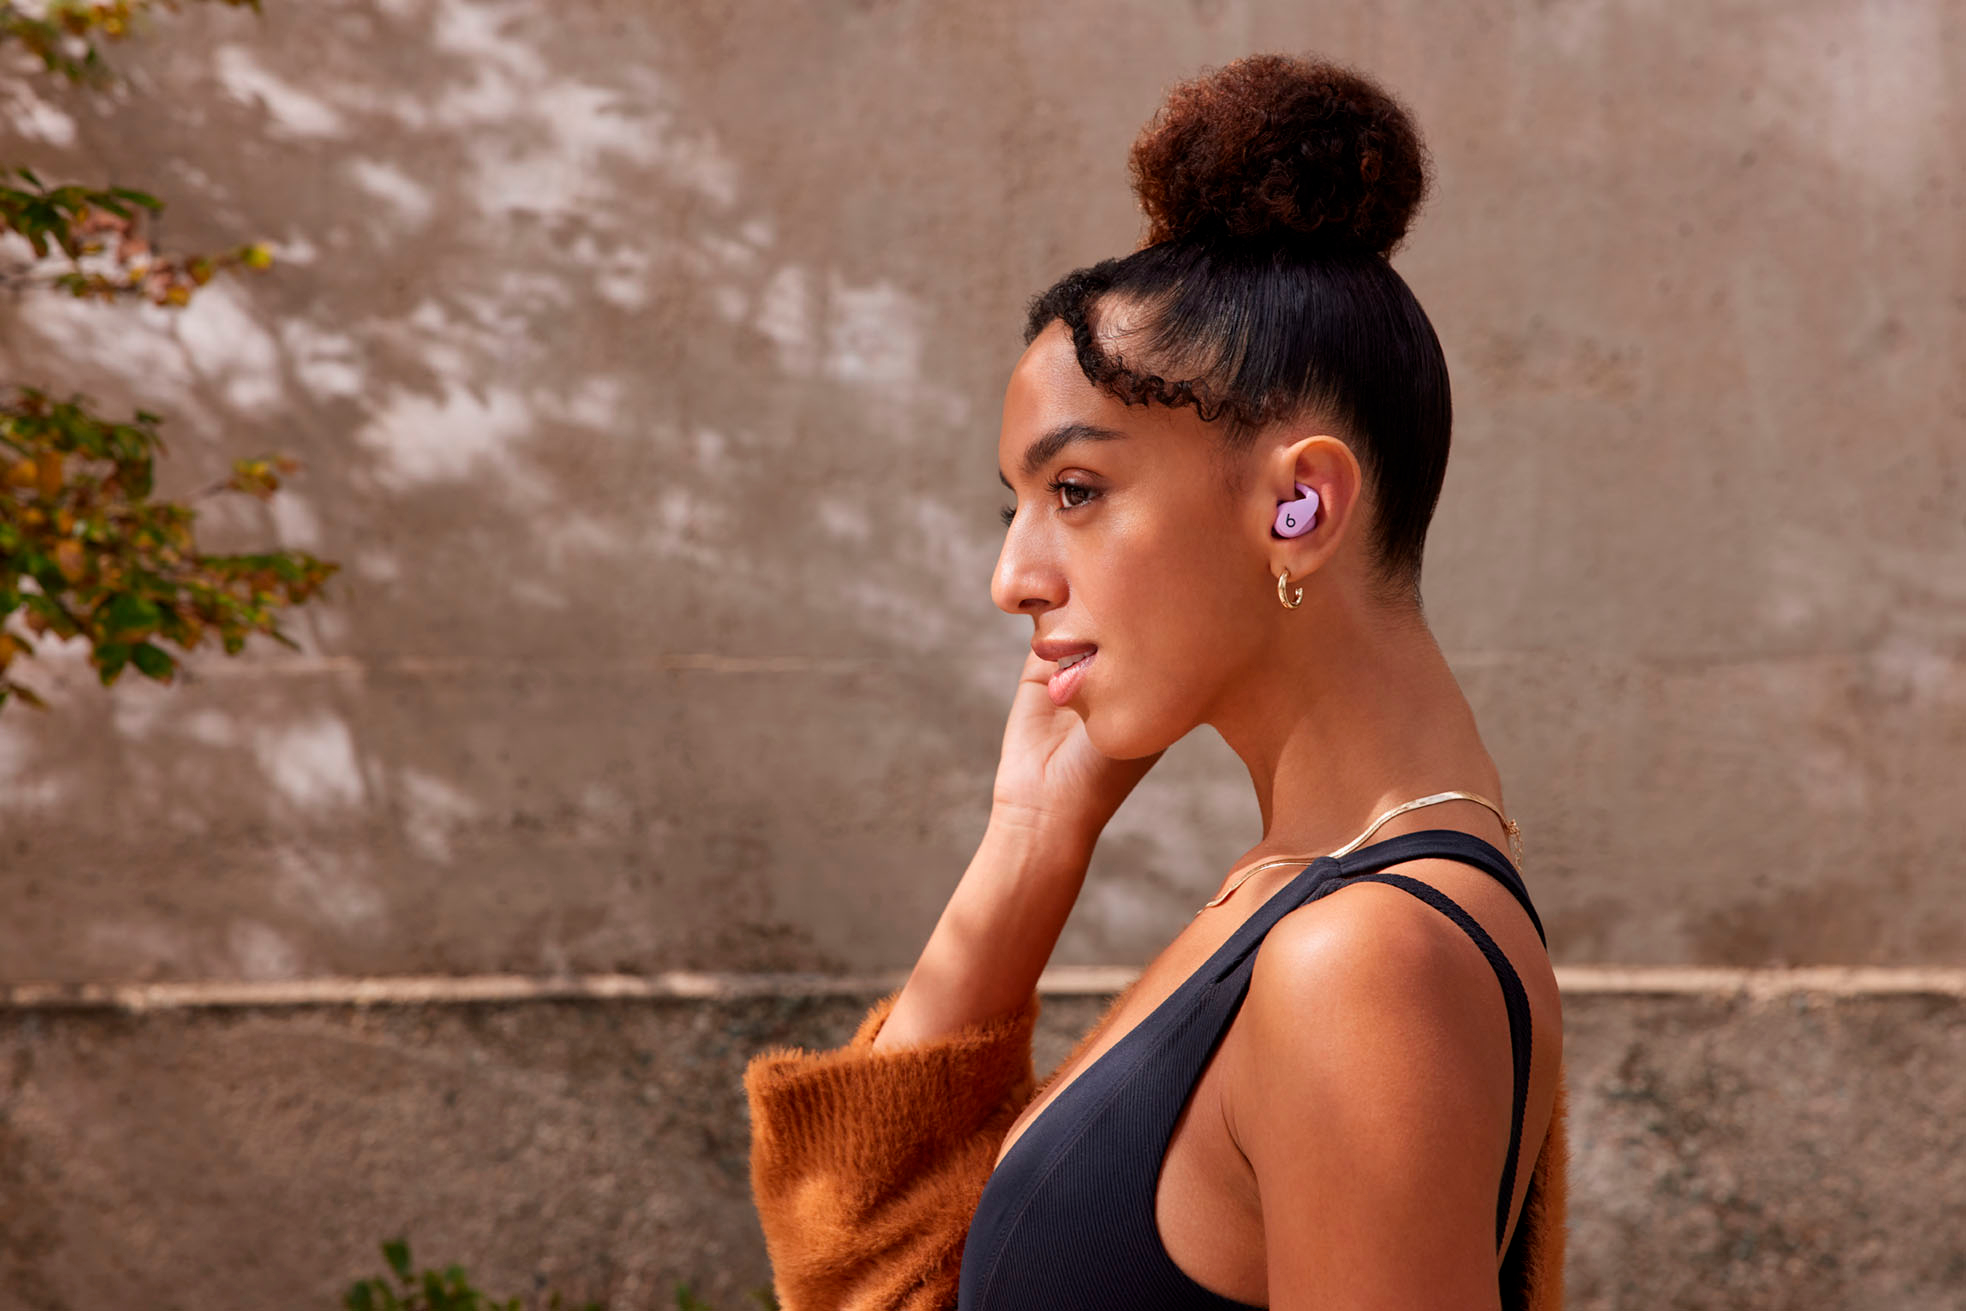 Beats Fit Pro True Wireless Noise Cancelling In-Ear Earbuds Purple  MK2H3LL/A - Best Buy